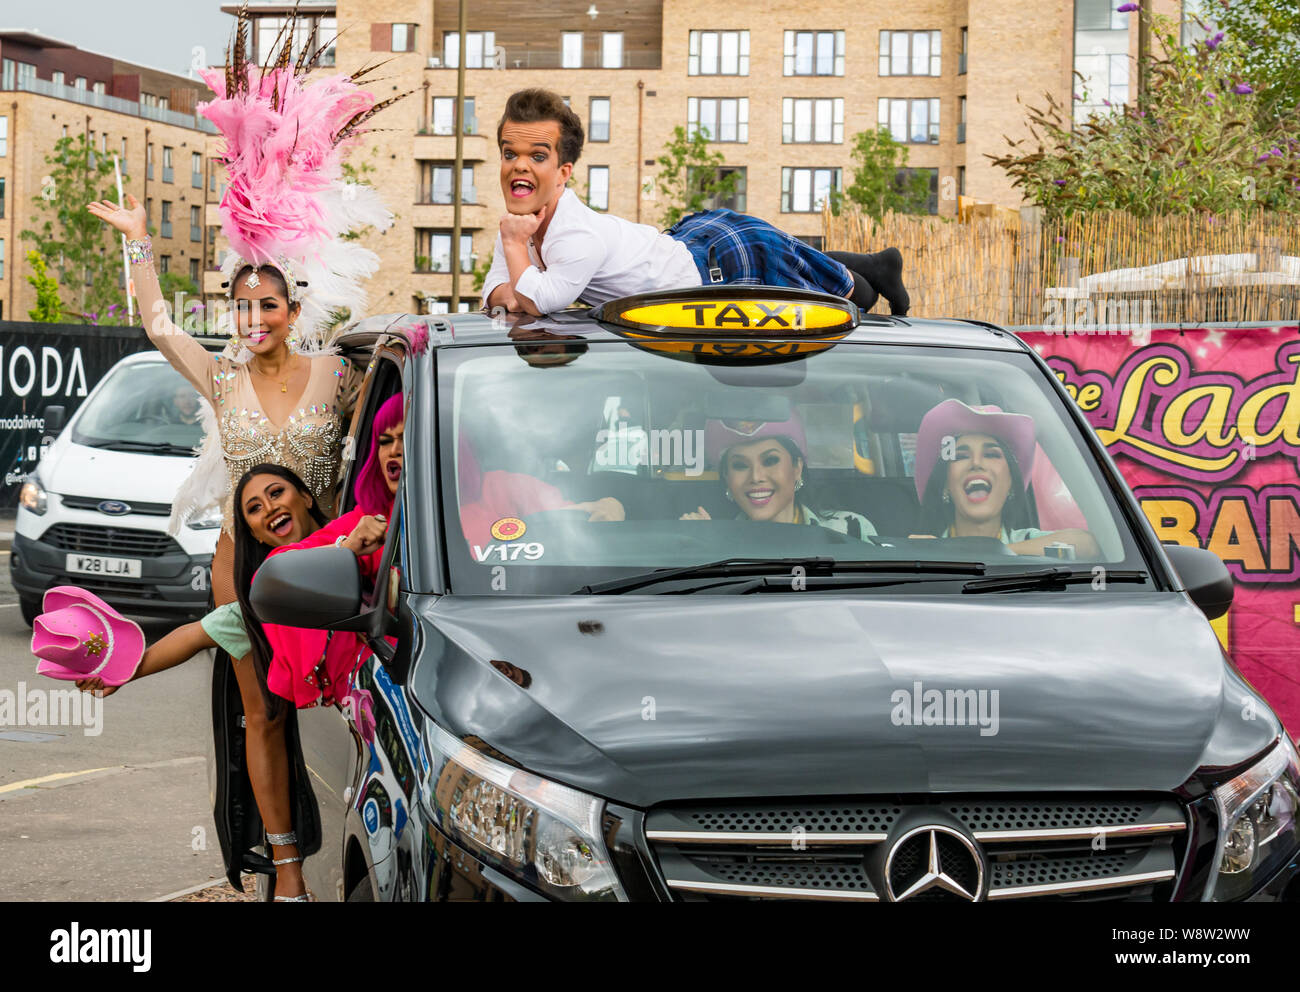 Lady Boys of Bangkok, Edinburgh Festival Fringe, Schottland, Großbritannien als Drag Artists und Zwerg in farbenfrohen Kostümen und Kopfschmuck ins Taxi kramen Stockfoto